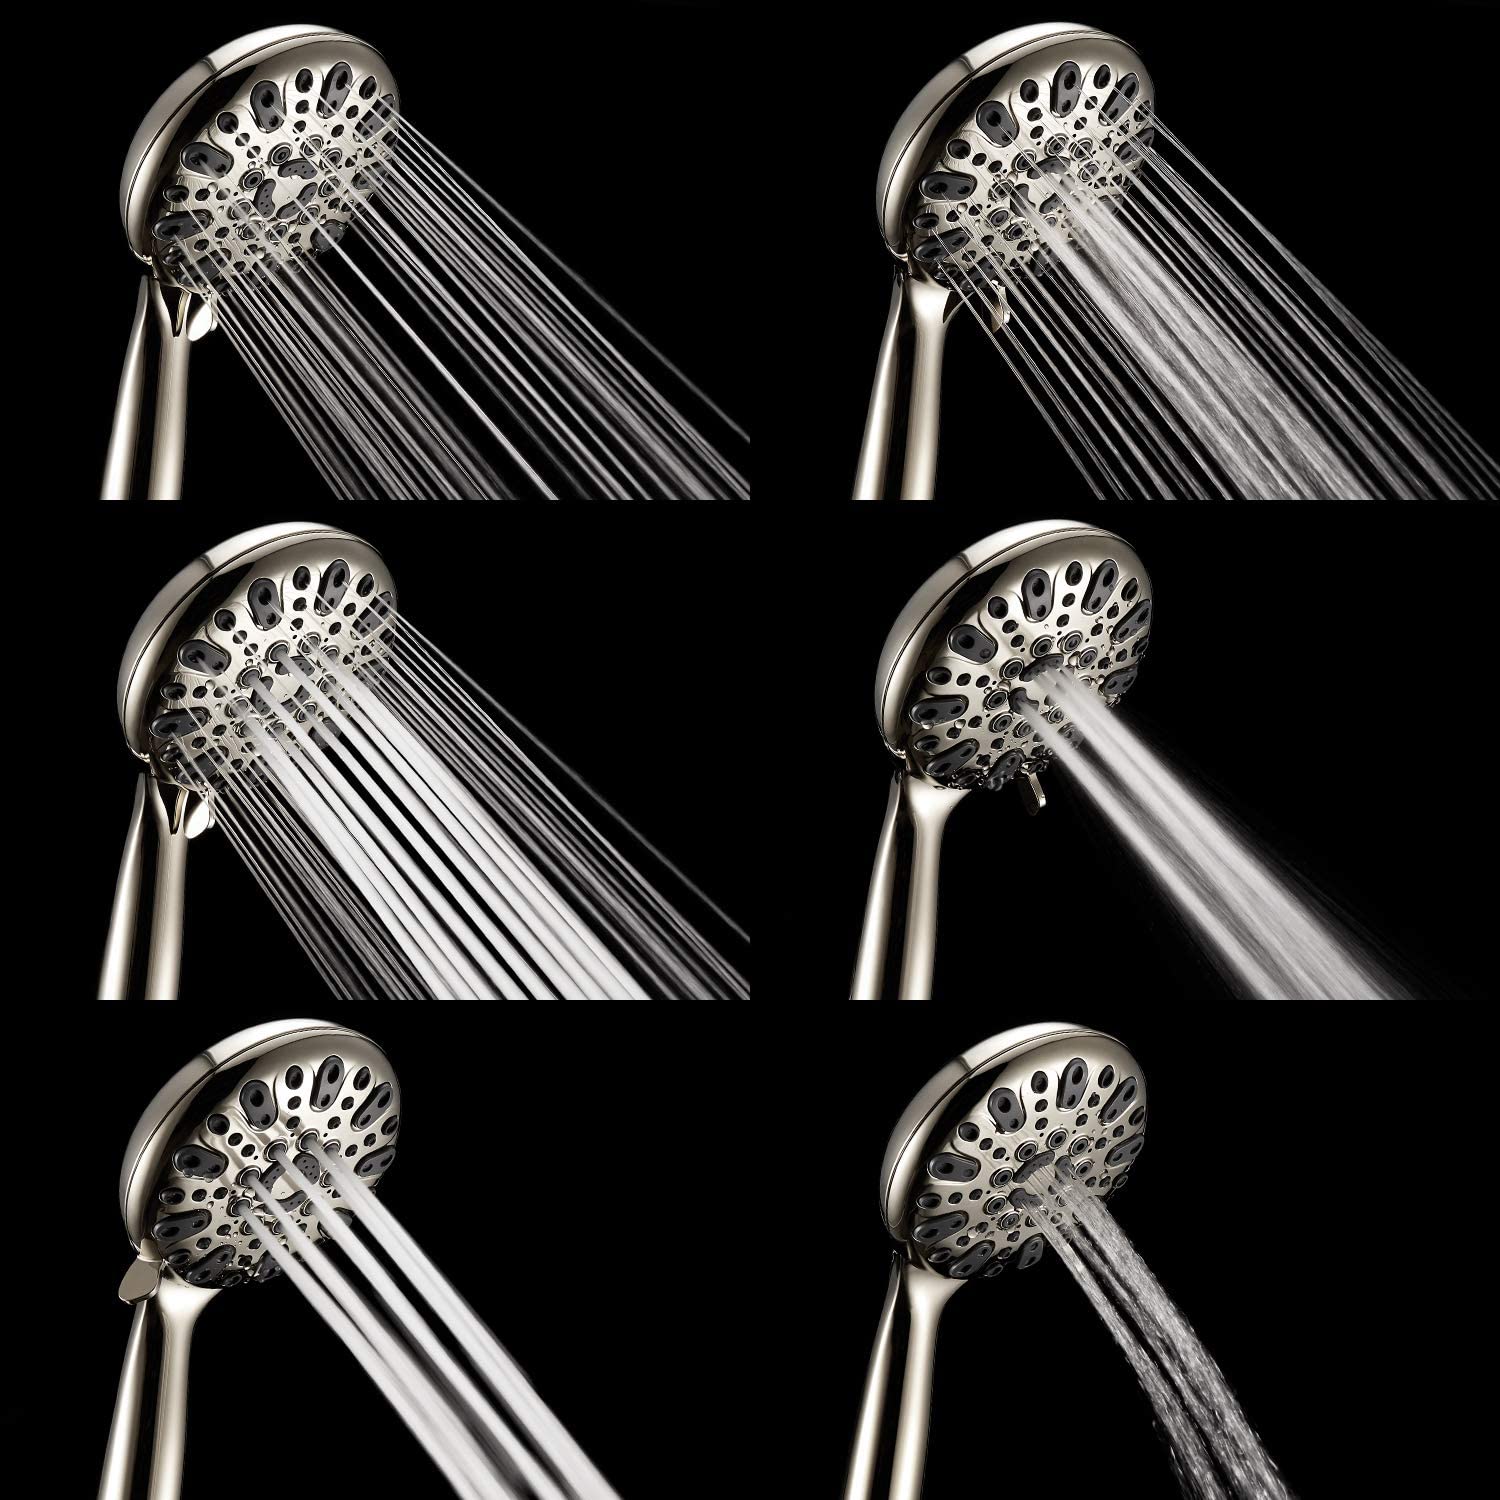 Best Selling Shower Head to Increase Water Pressure - Water Browser